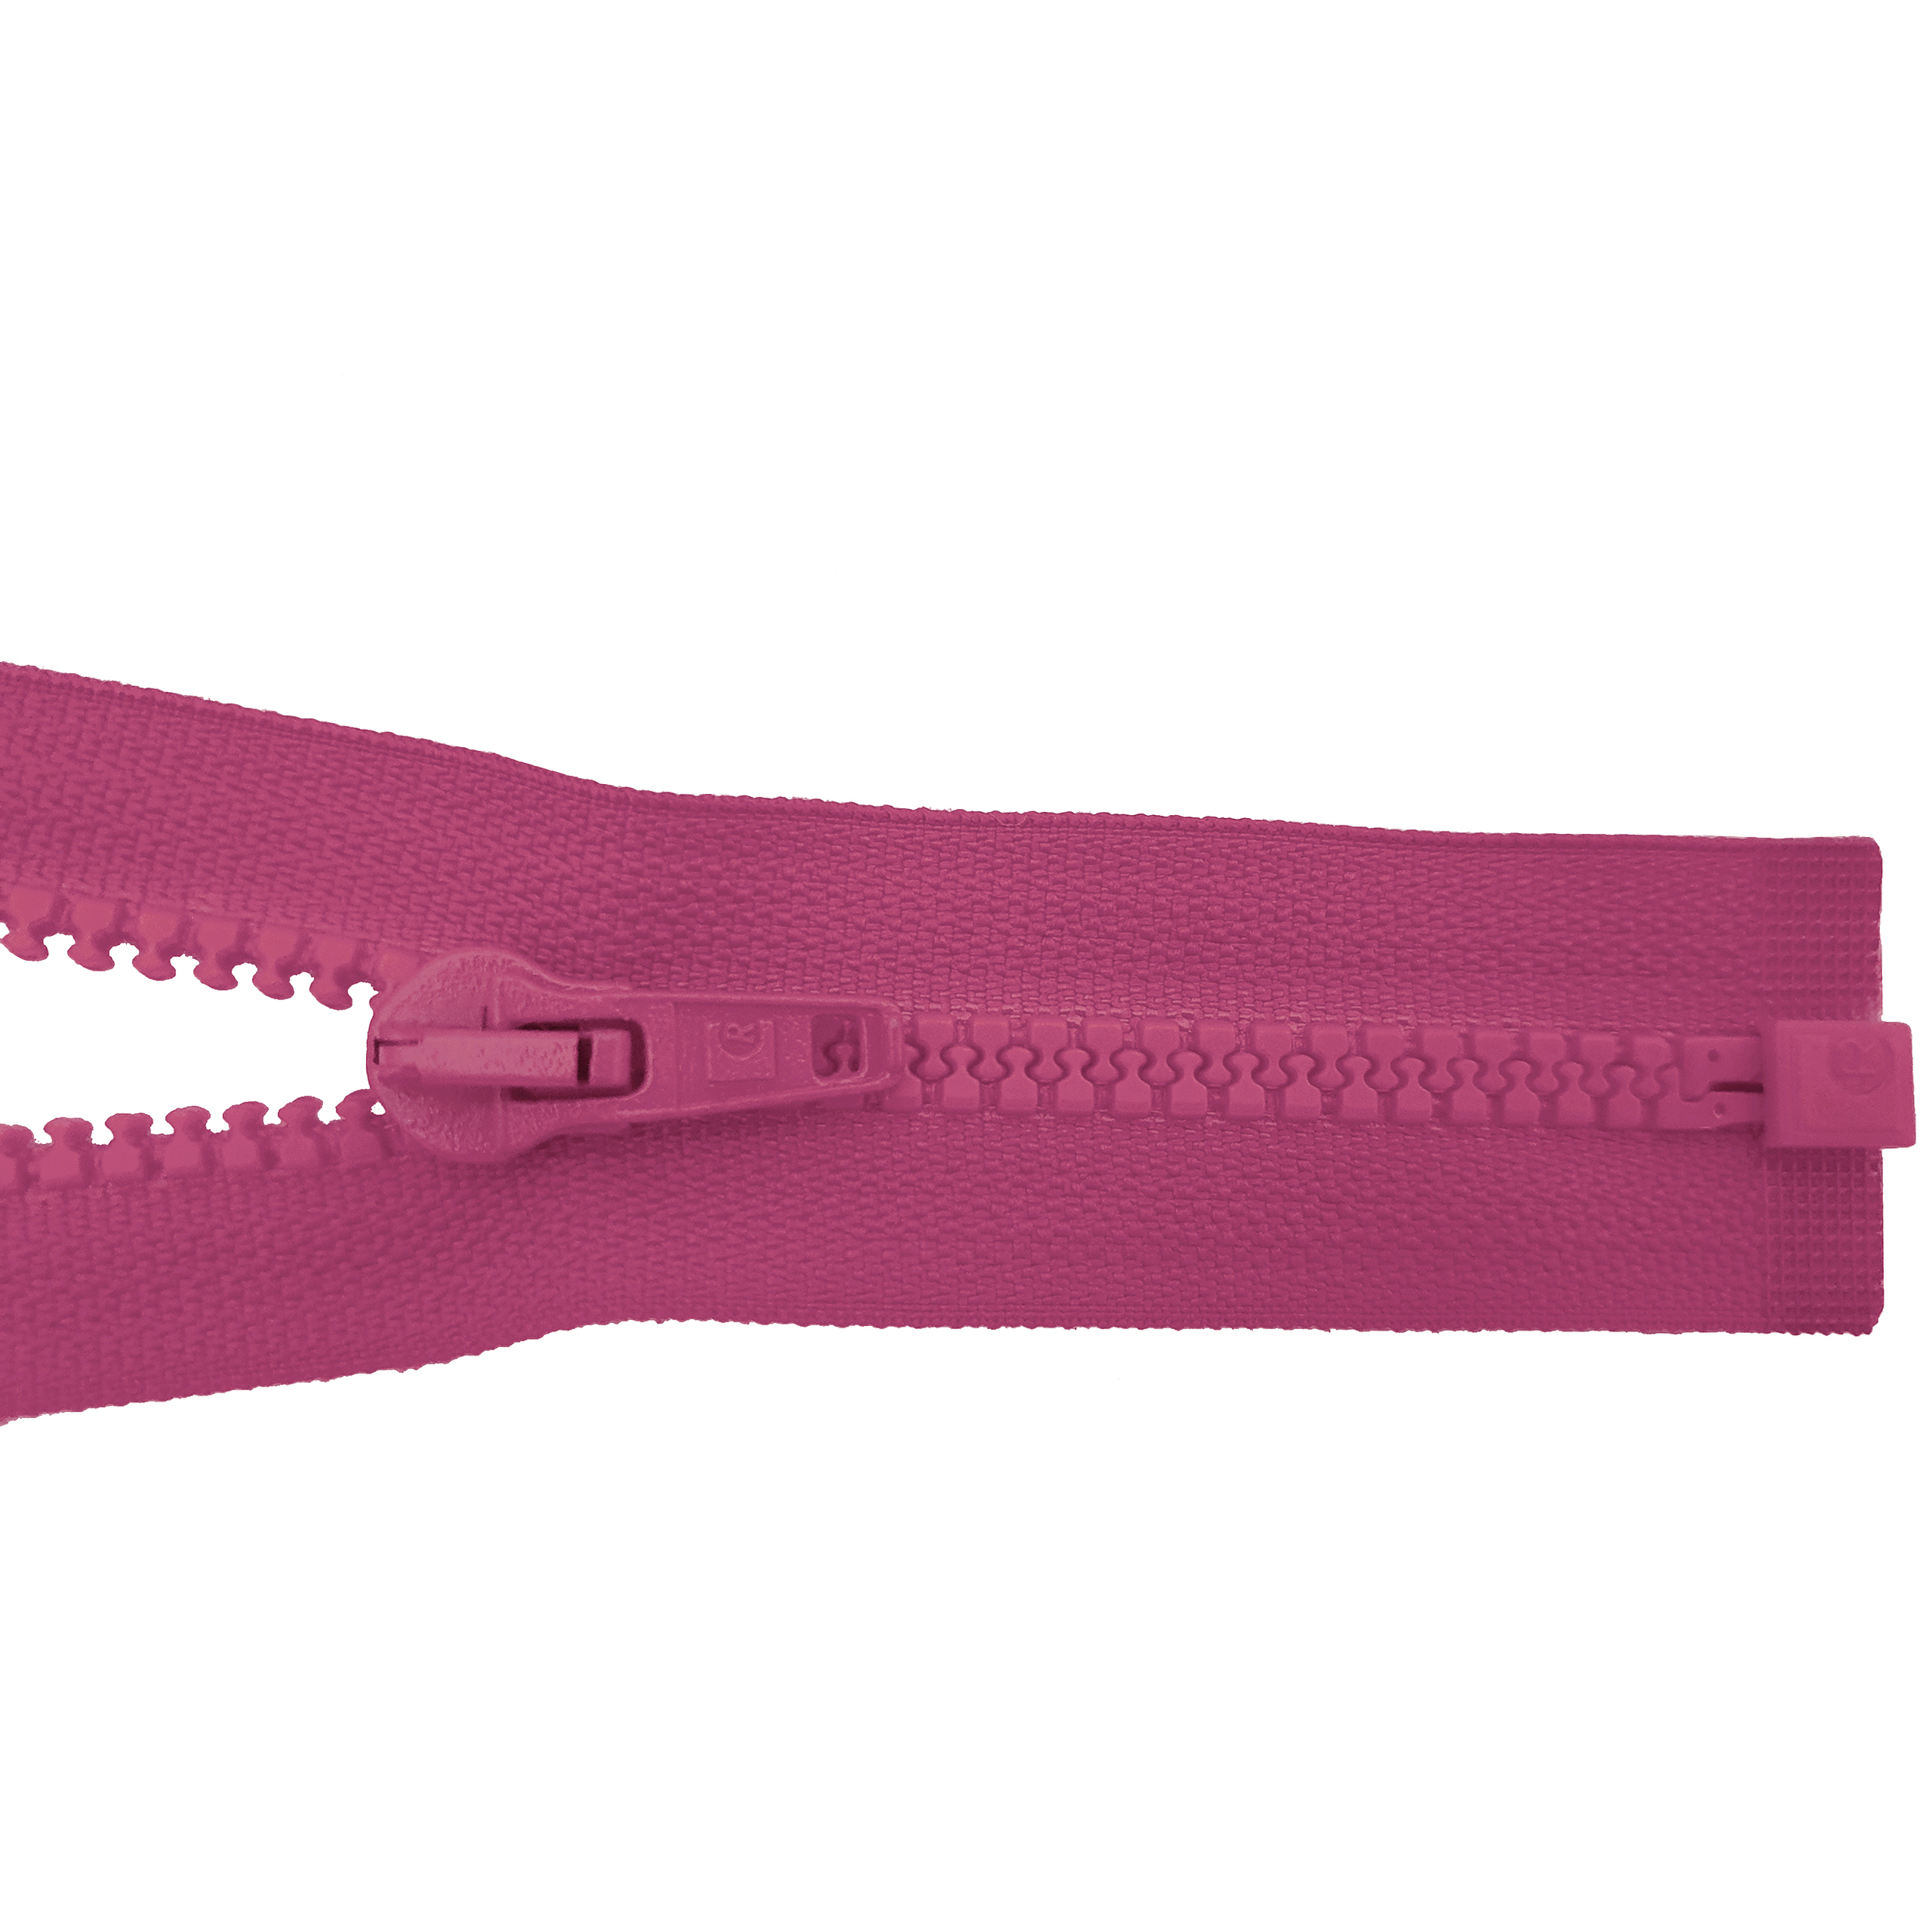 Reißverschluss 80cm, teilbar, Kstoff Zähne breit, fuchsia, hochwertiger Marken-Reißverschluss von Rubi/Barcelona